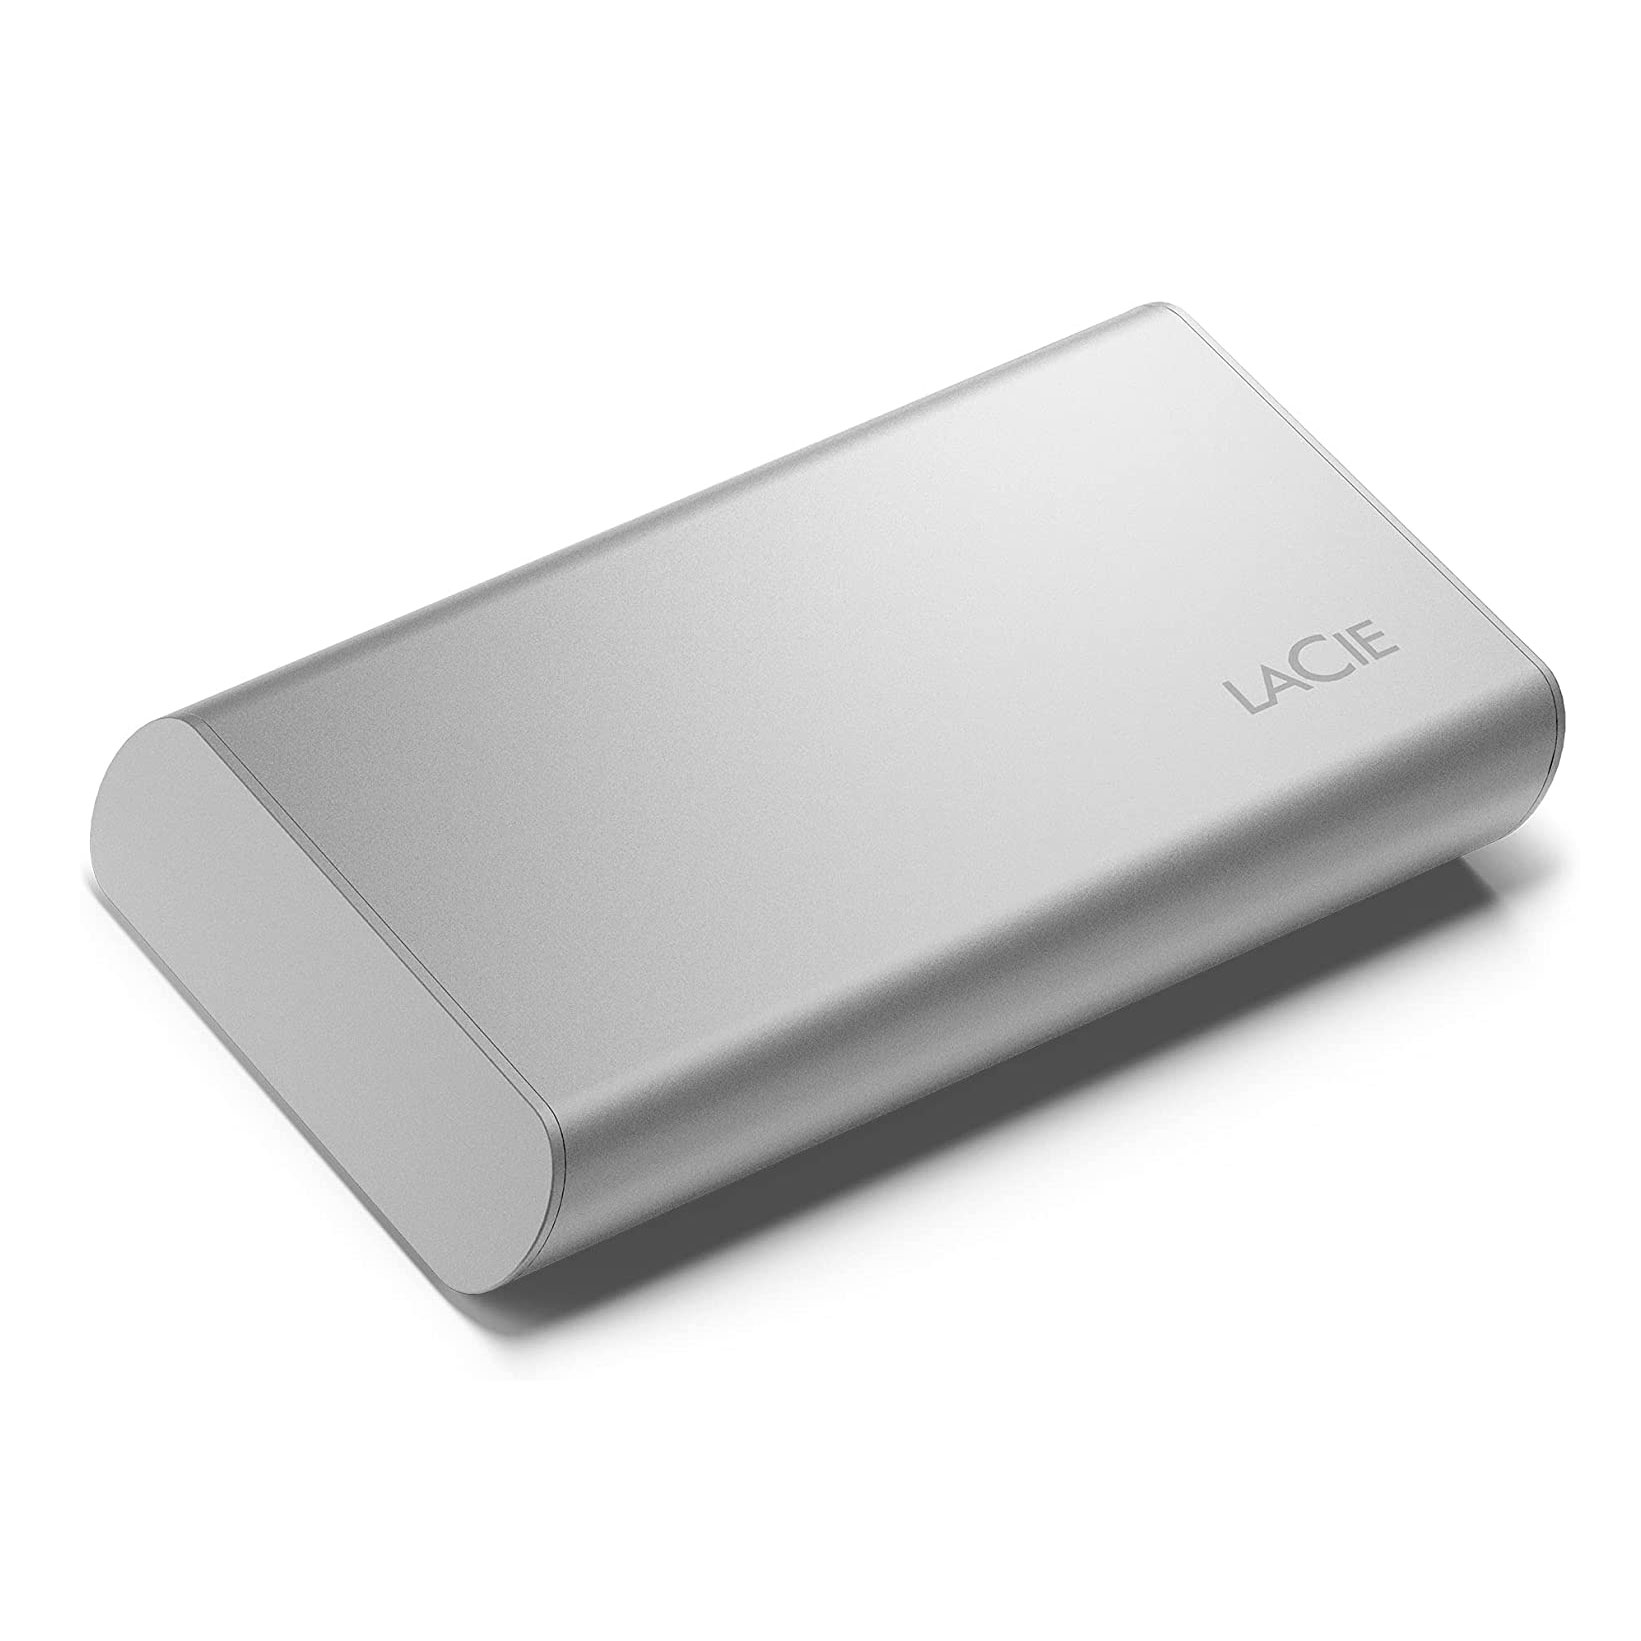 Внешний диск SSD LaCie Portable, 500Гб, серебристый